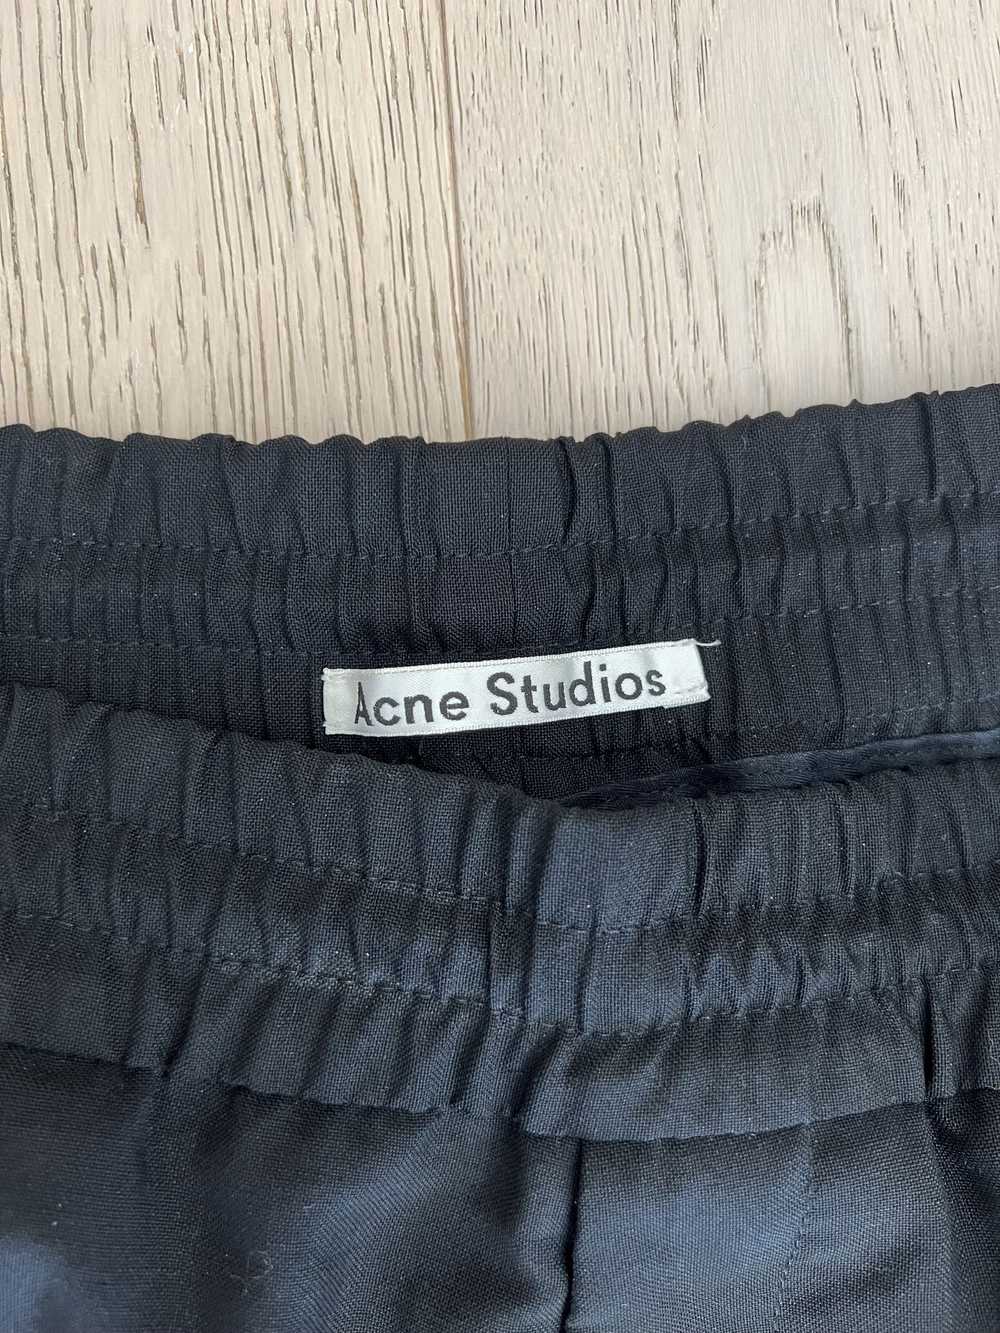 Acne Studios Ryder Black Wool pants - image 2